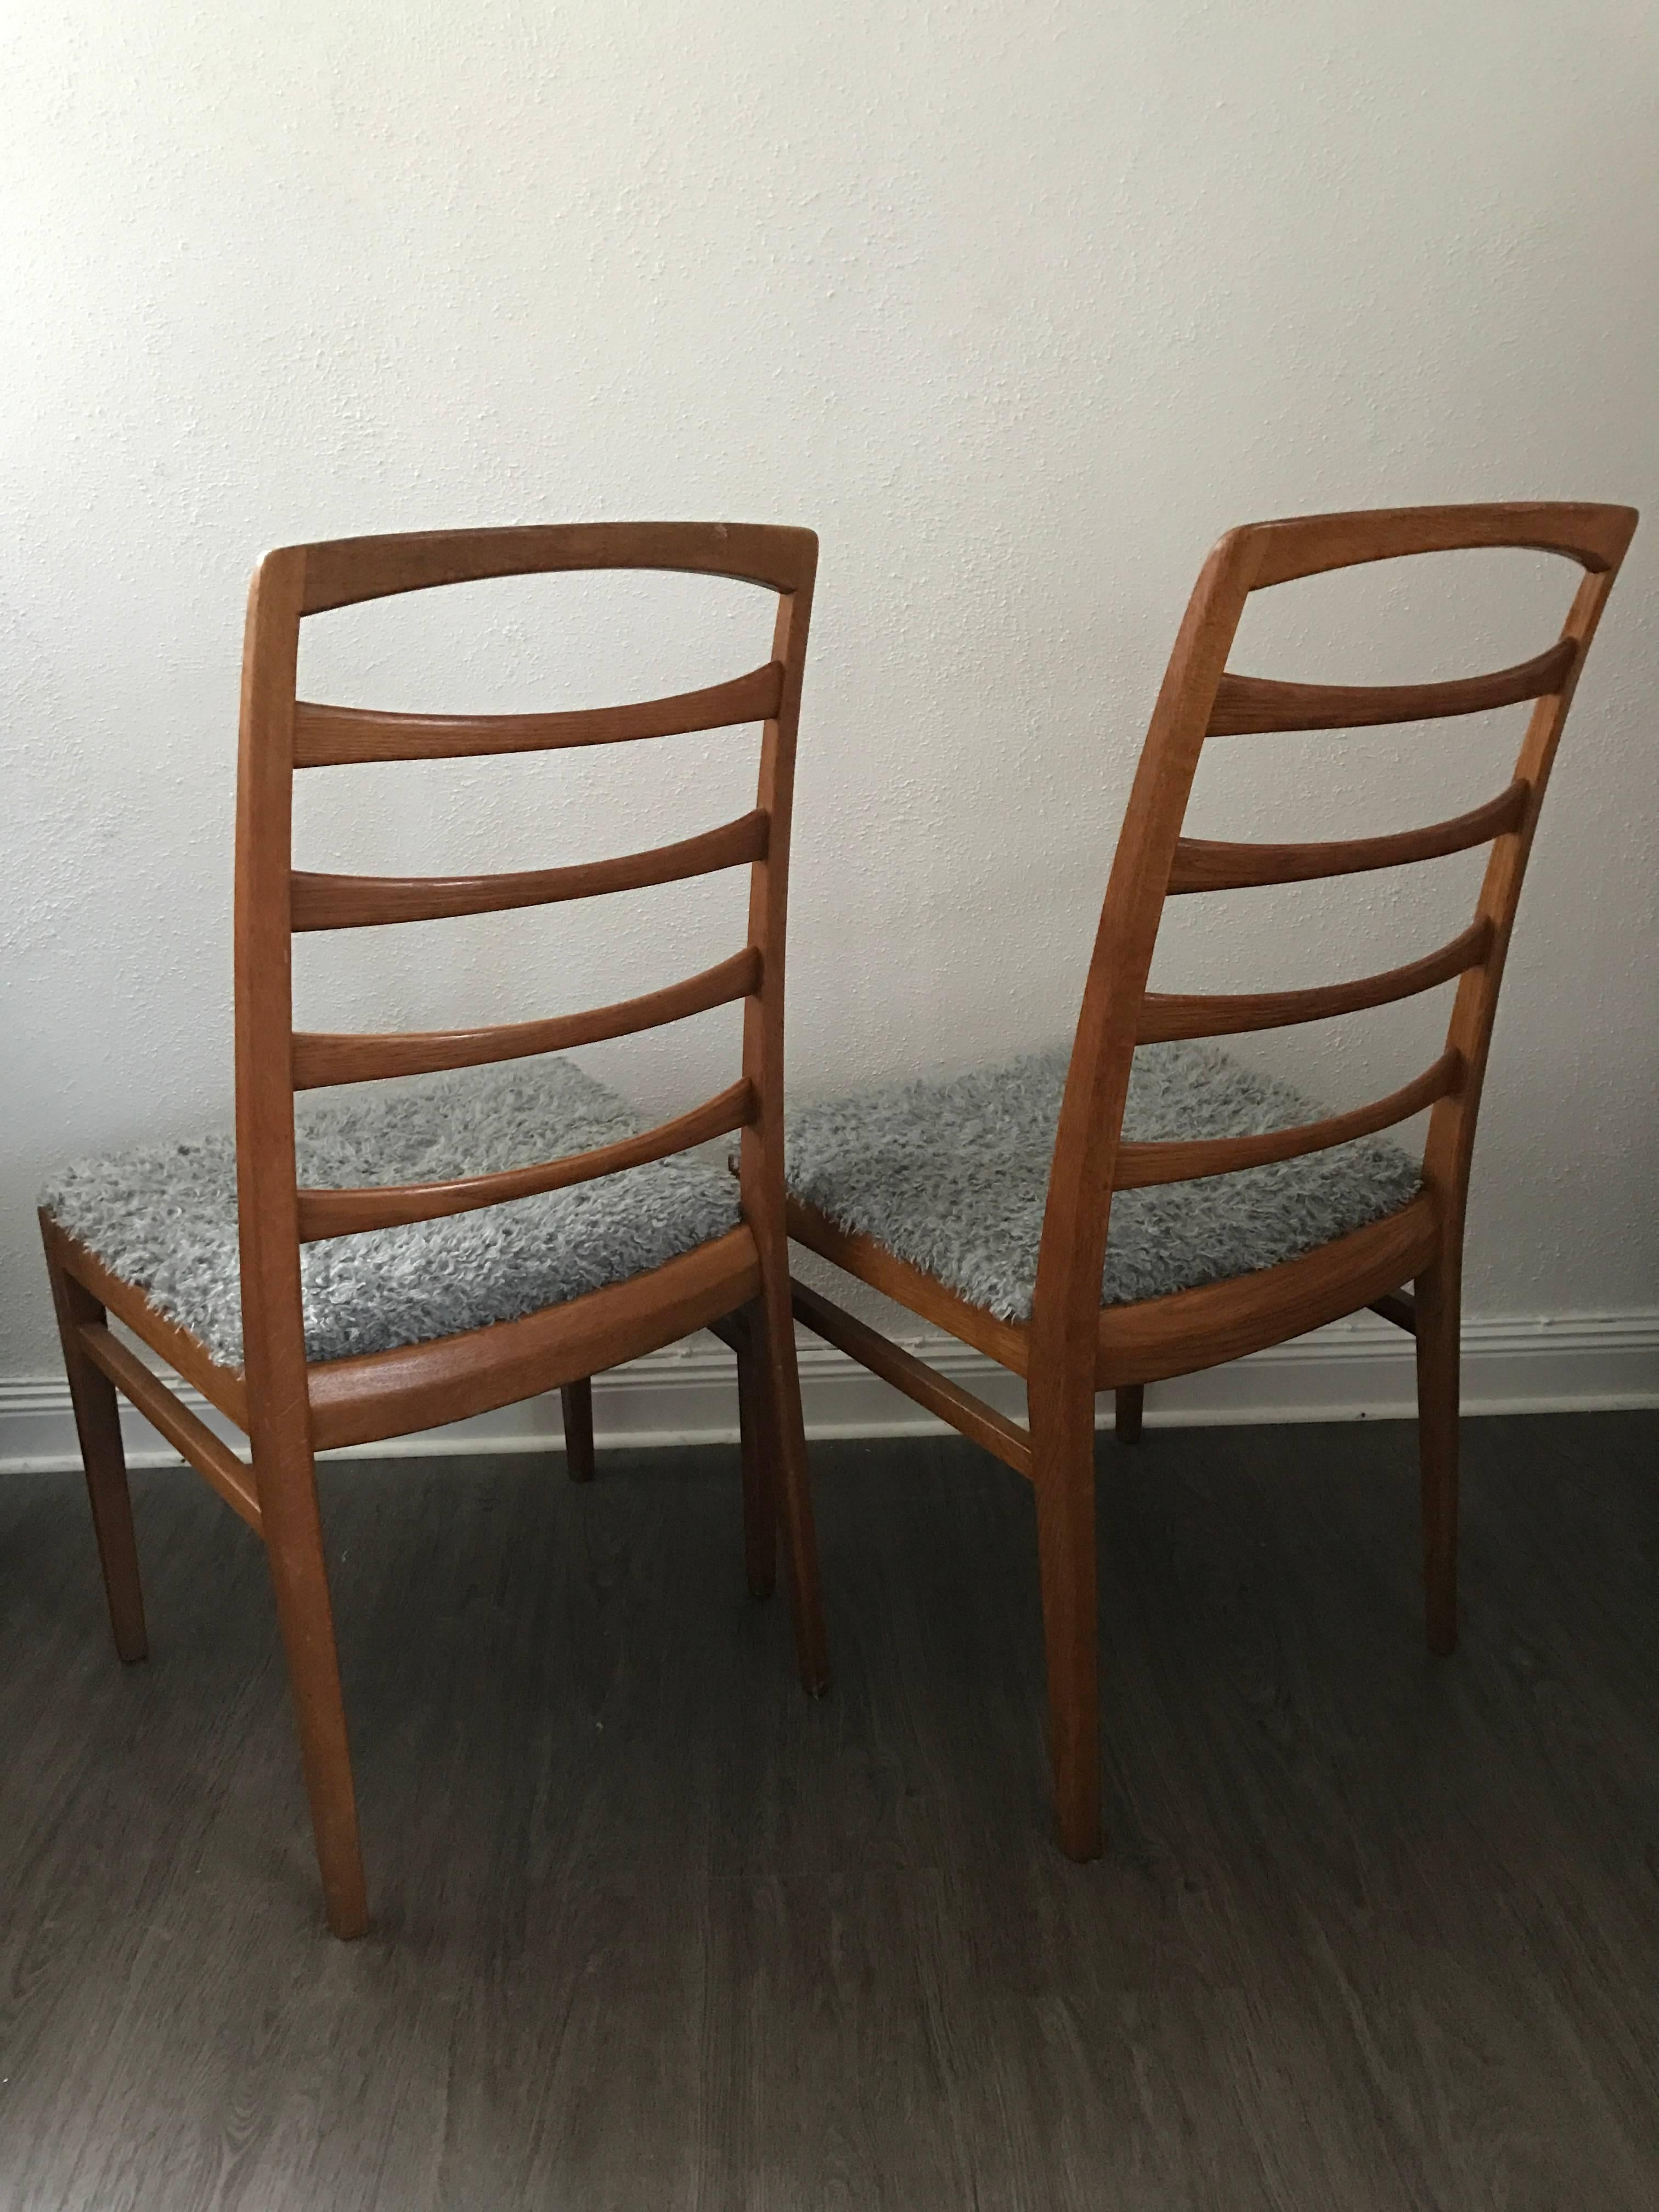 1957 Reno Oak Bodafors Swedish Designer Chairs Bertil Fridhagen 12 Chairs For Sale 4